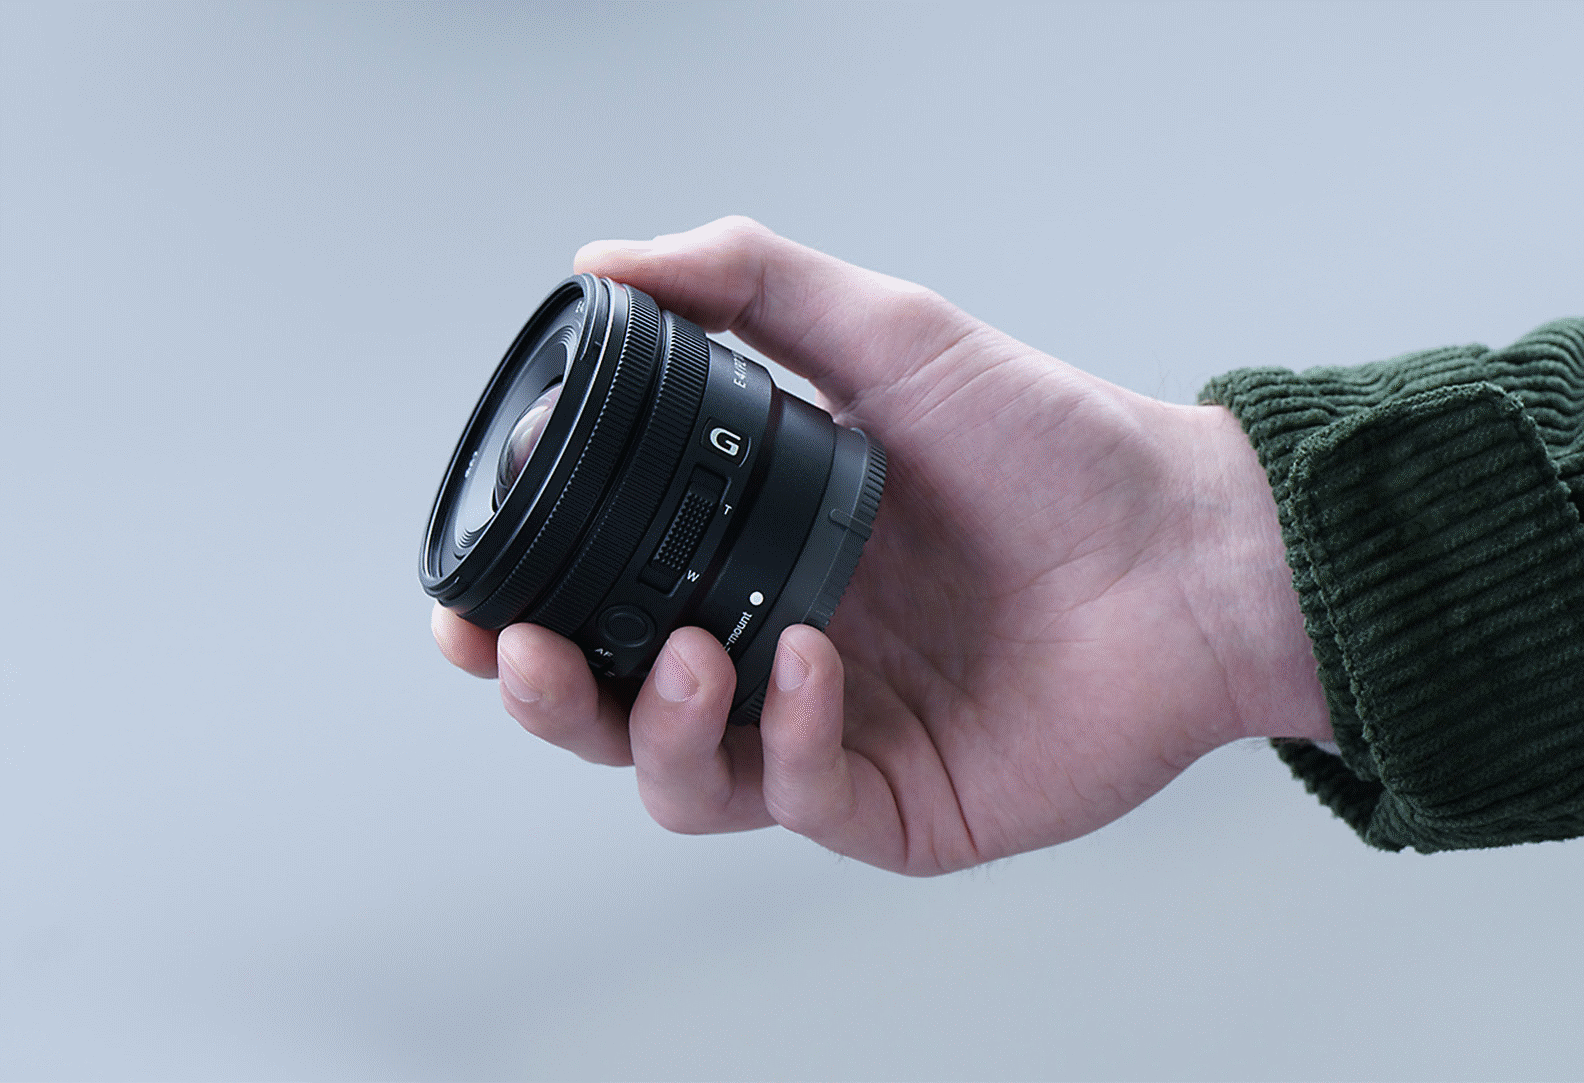 صورة ليد شخص تحمل عدسة E PZ مقاس 10-20 مم ببعد بؤري F4 من السلسلة G، تُظهر أن العدسة صغيرة بما يكفي لتتسع في يده